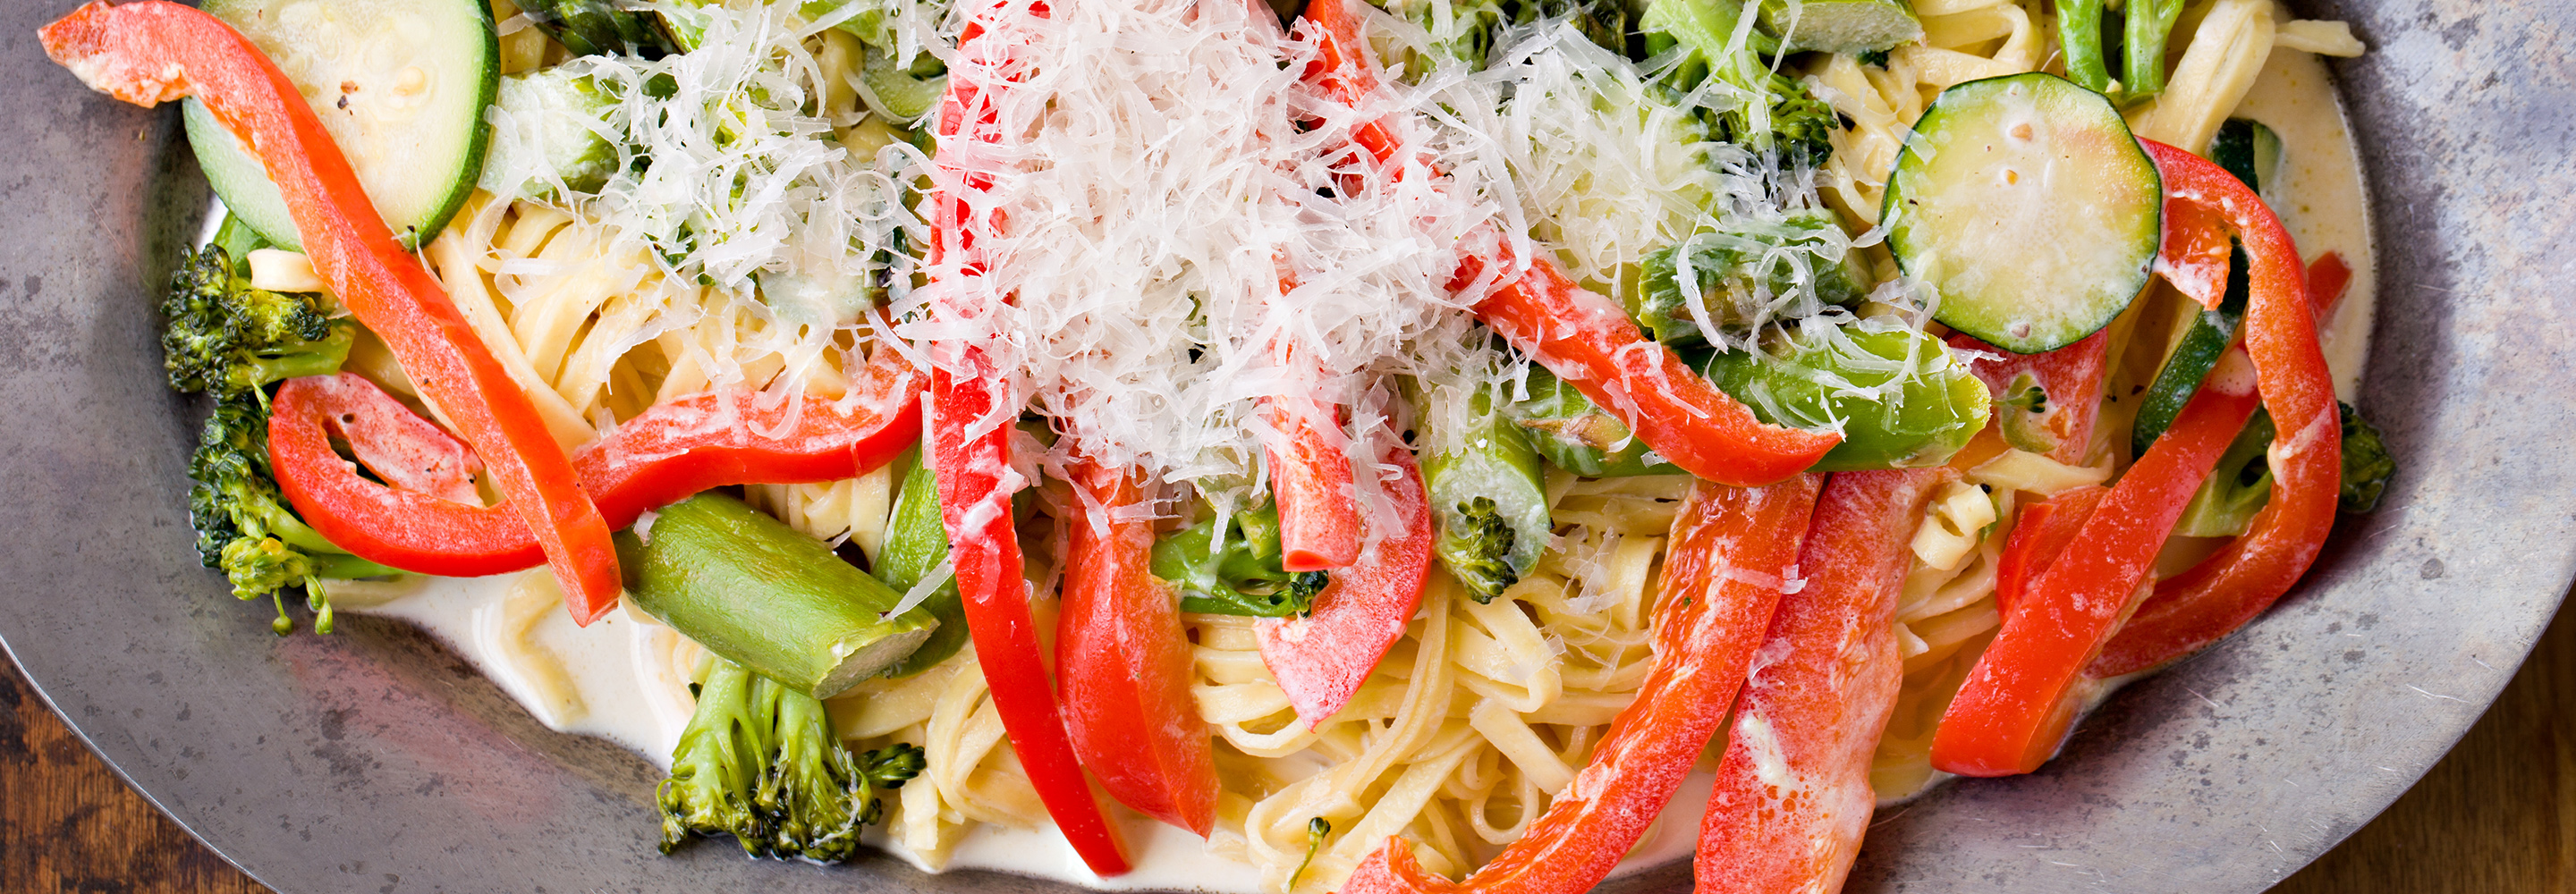 Ciepłe spaghetti z warzywami - Galbani – od ponad 140 lat dostarczamy najlepsze włoskie smaki na talerze całego świata